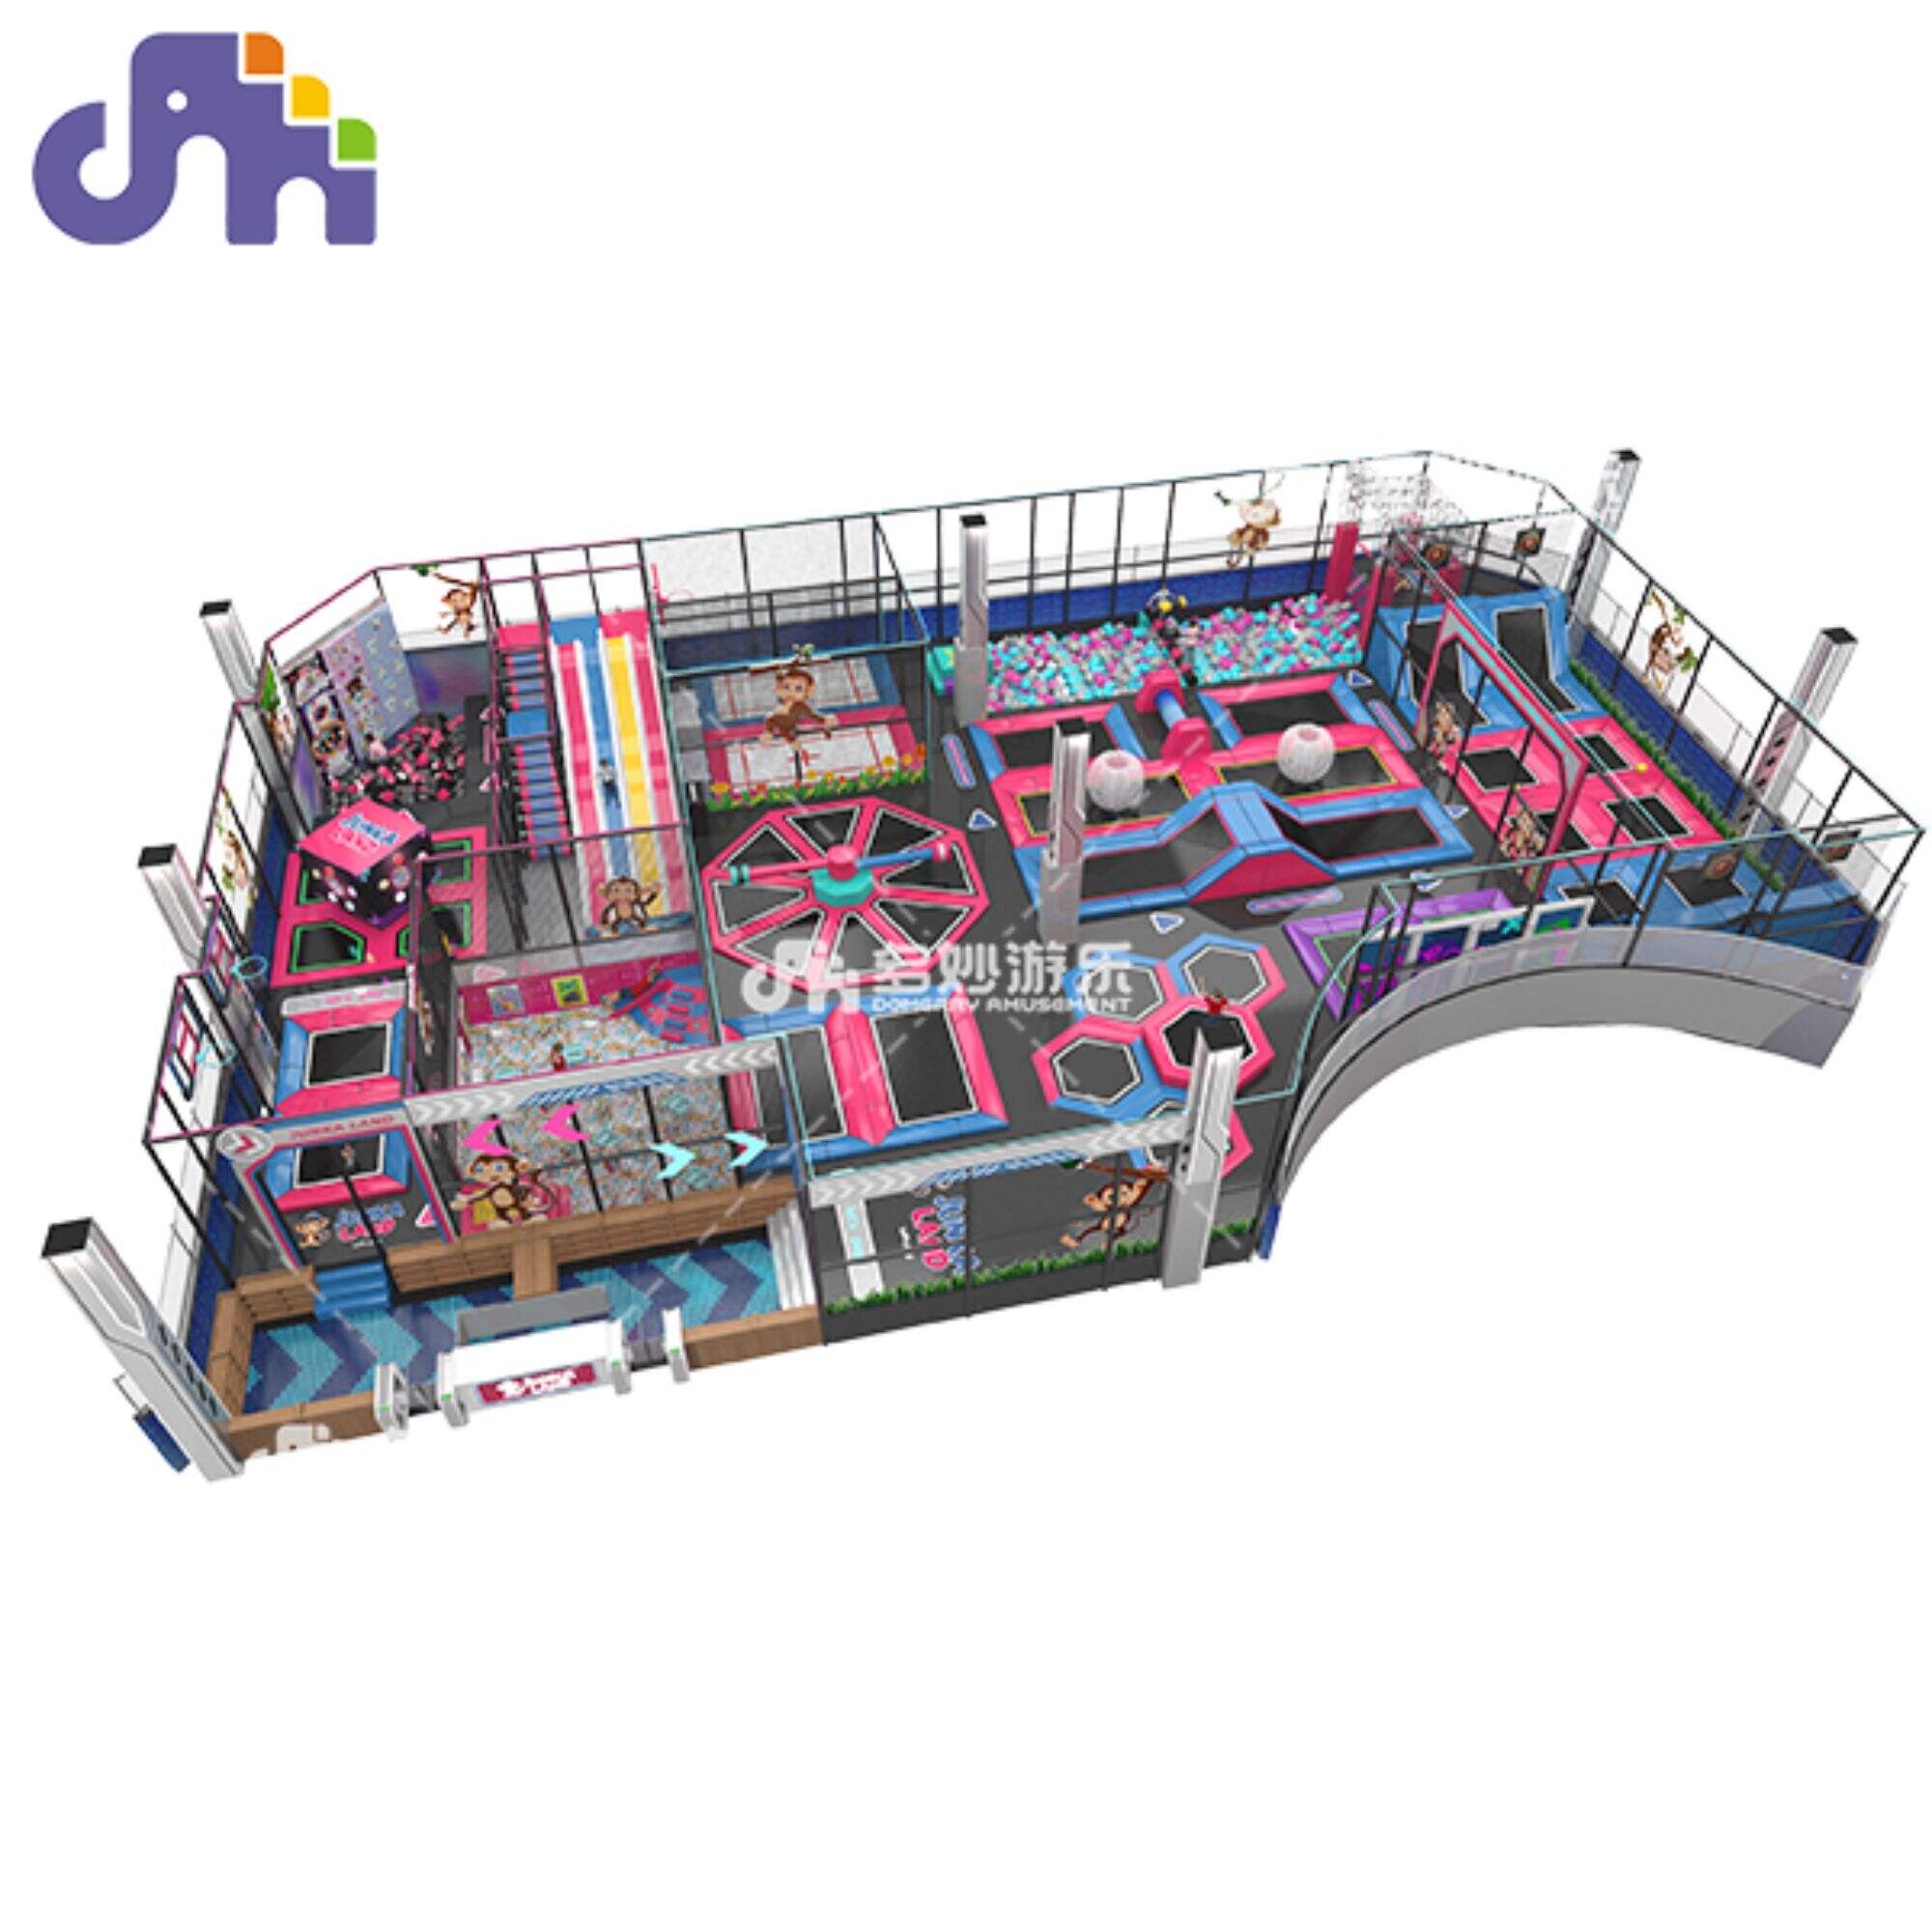 Dětský trampolínový park od výrobce Adult Jumpoline Trampoline k dispozici pro nákupní centra